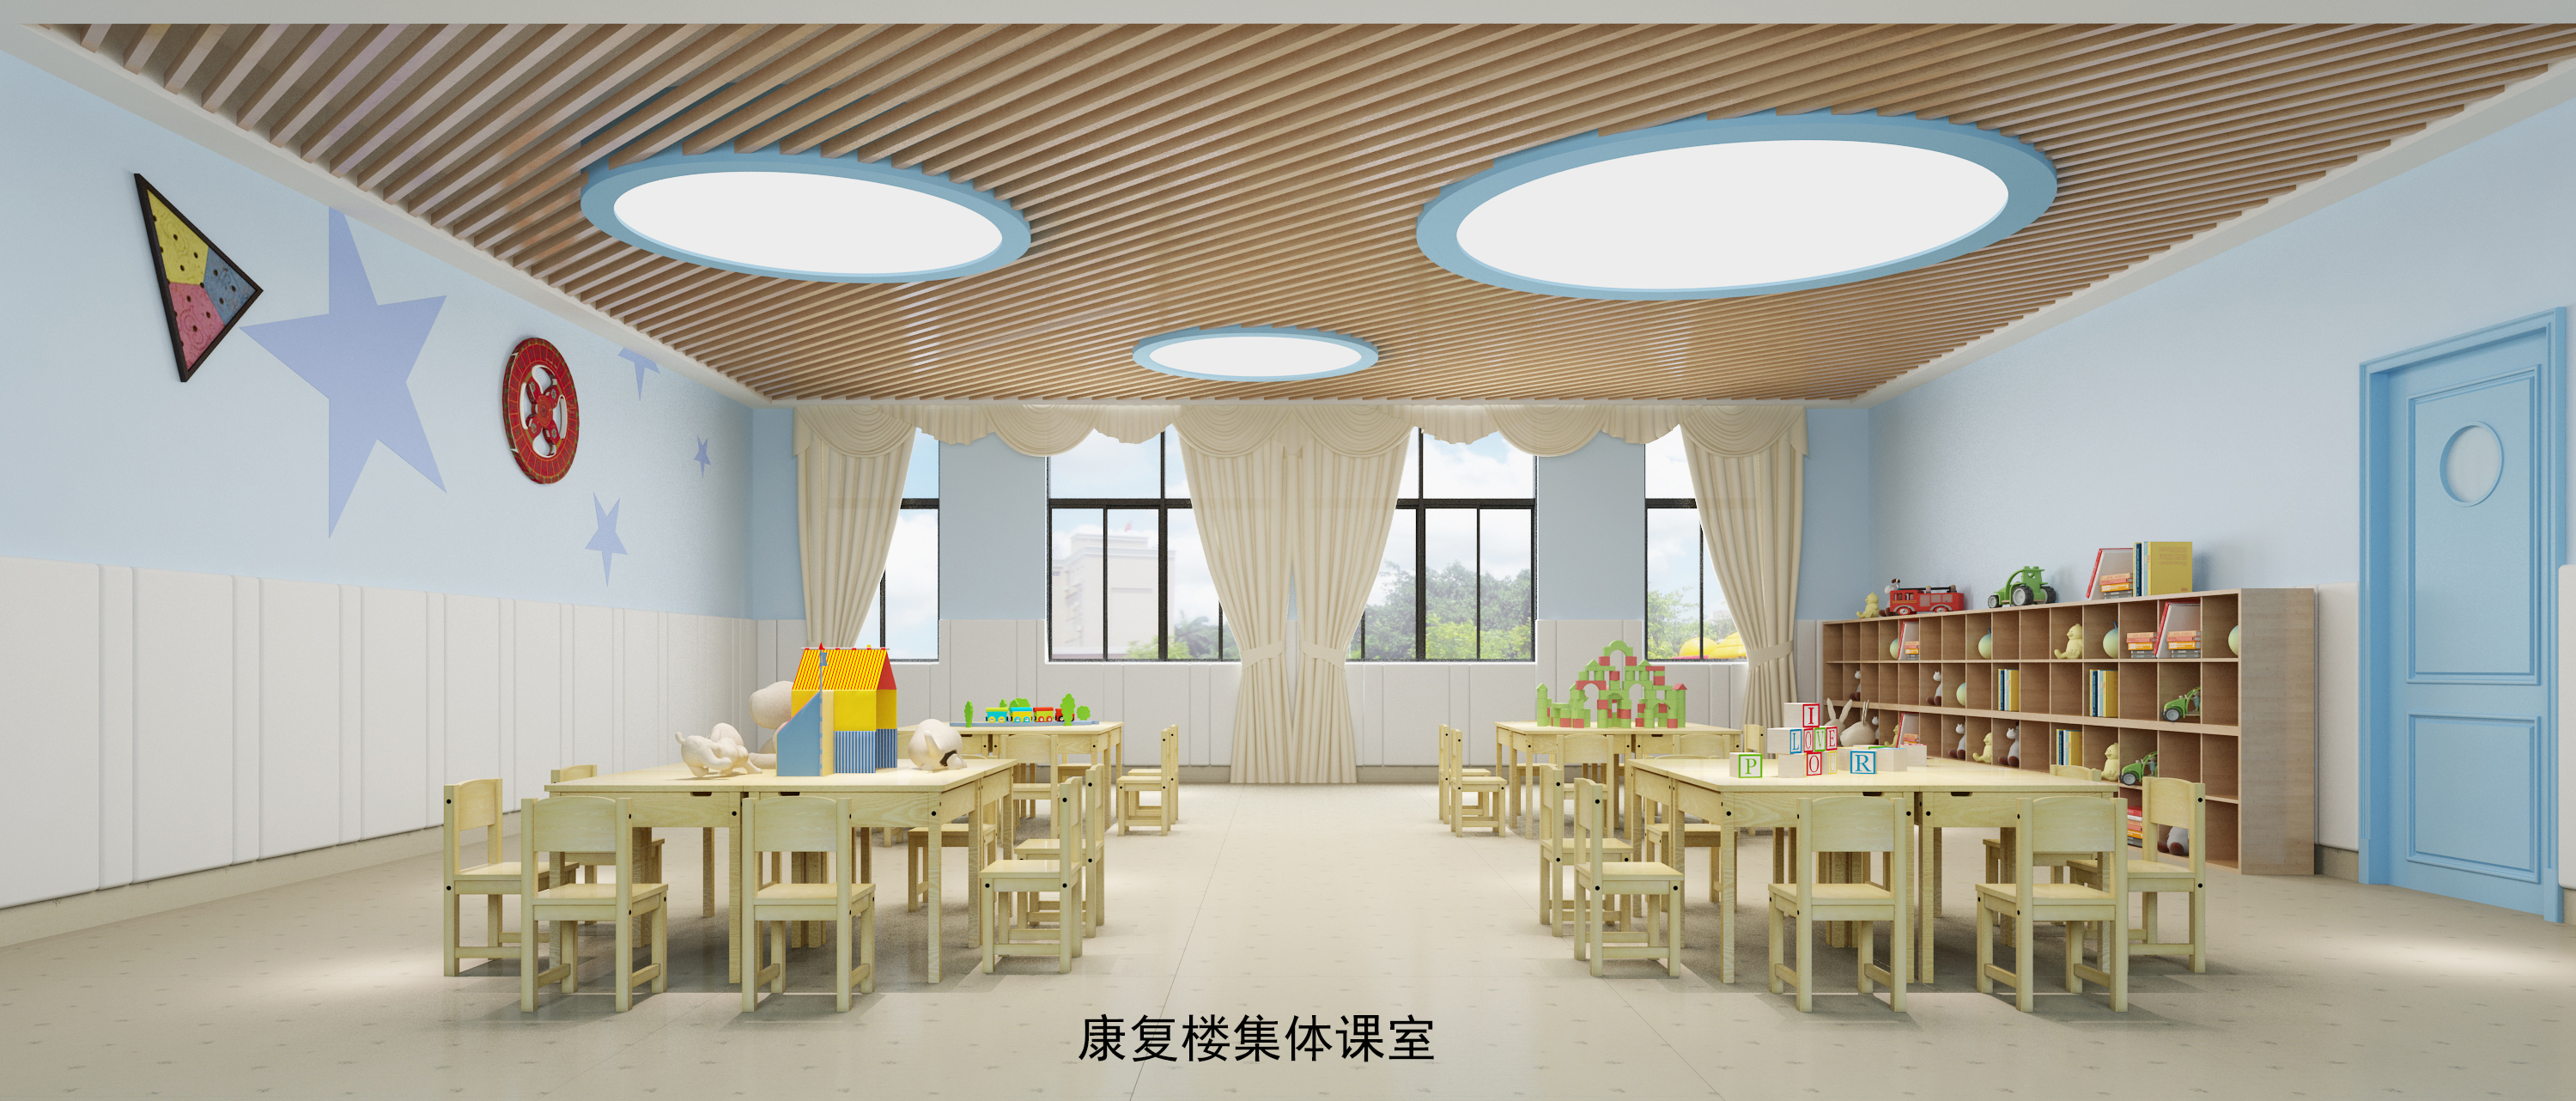 惠州市殘疾人綜合服務中心建筑裝修工程